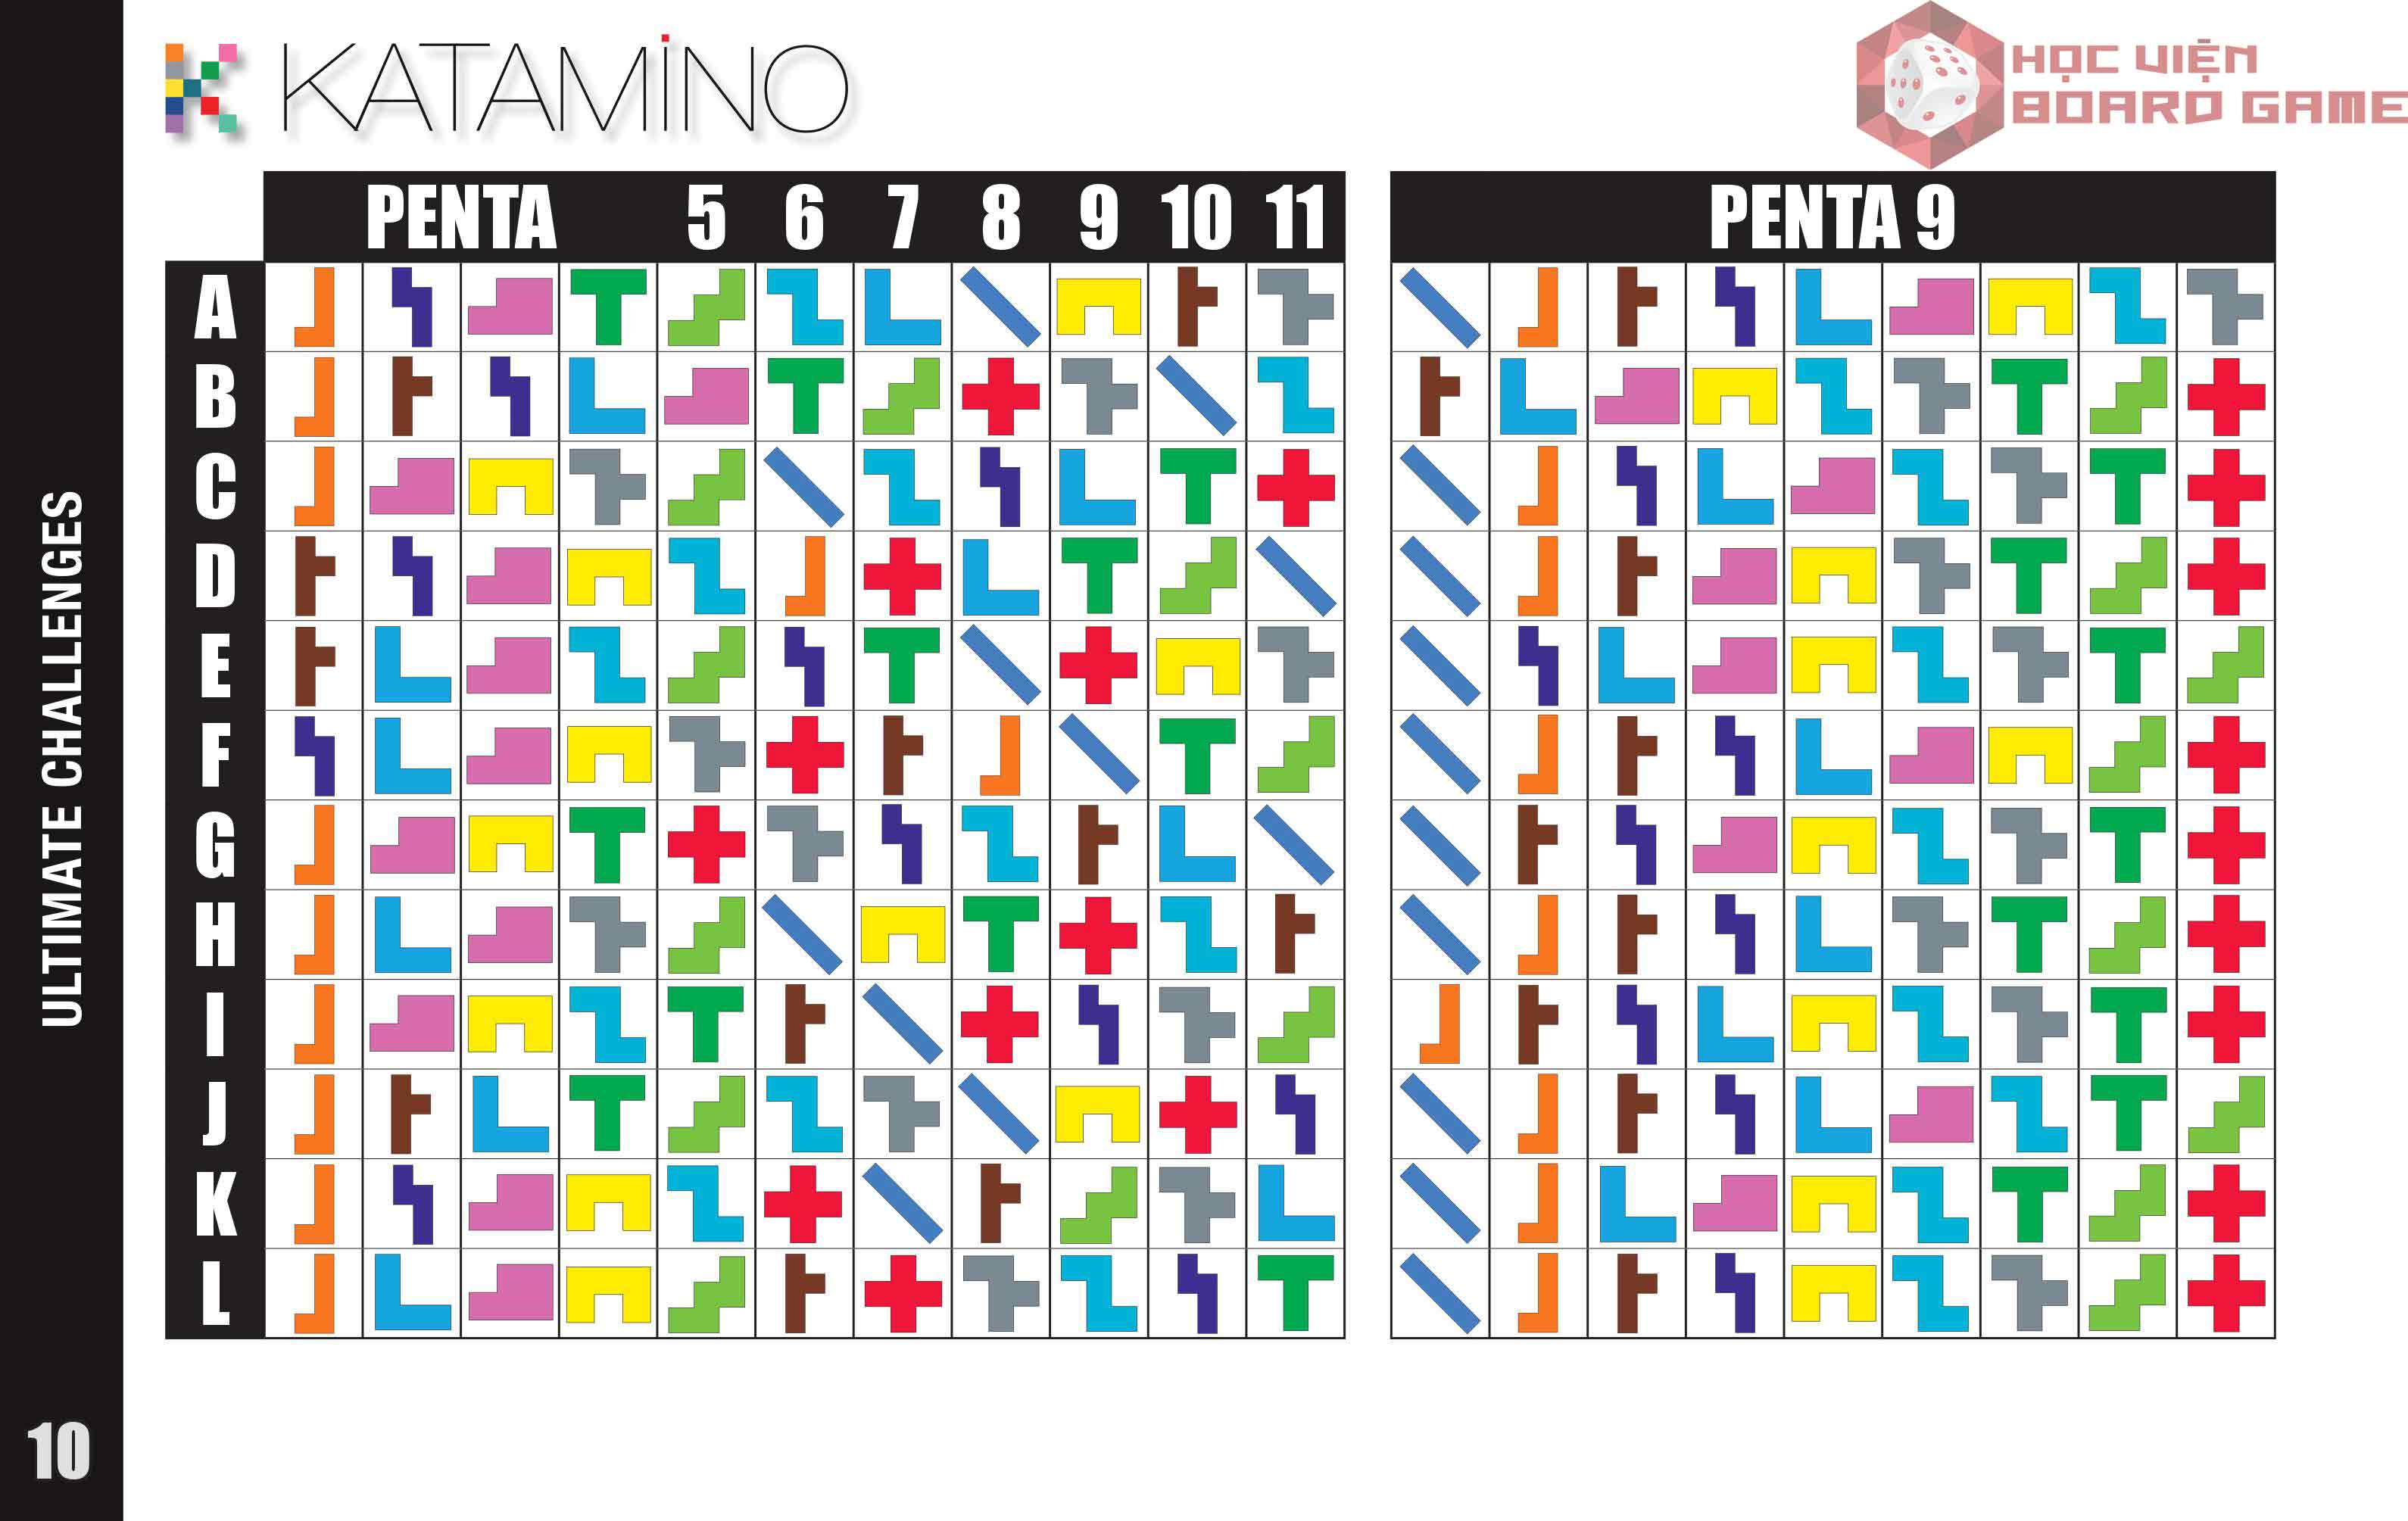 Bảng 5: Các cấp độ khó nhất của Katamino